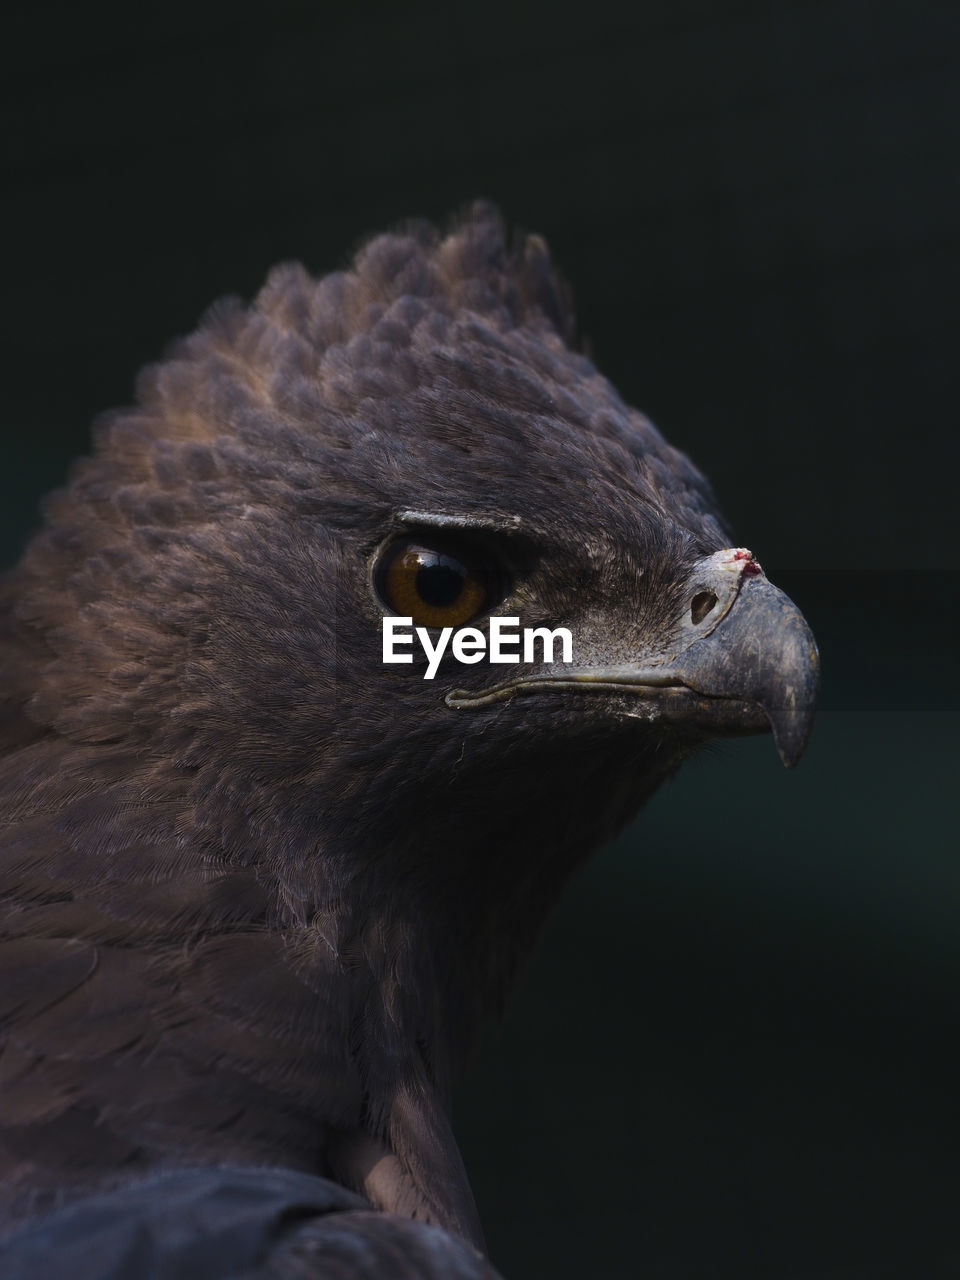 Sharp eyed indonesian eagle